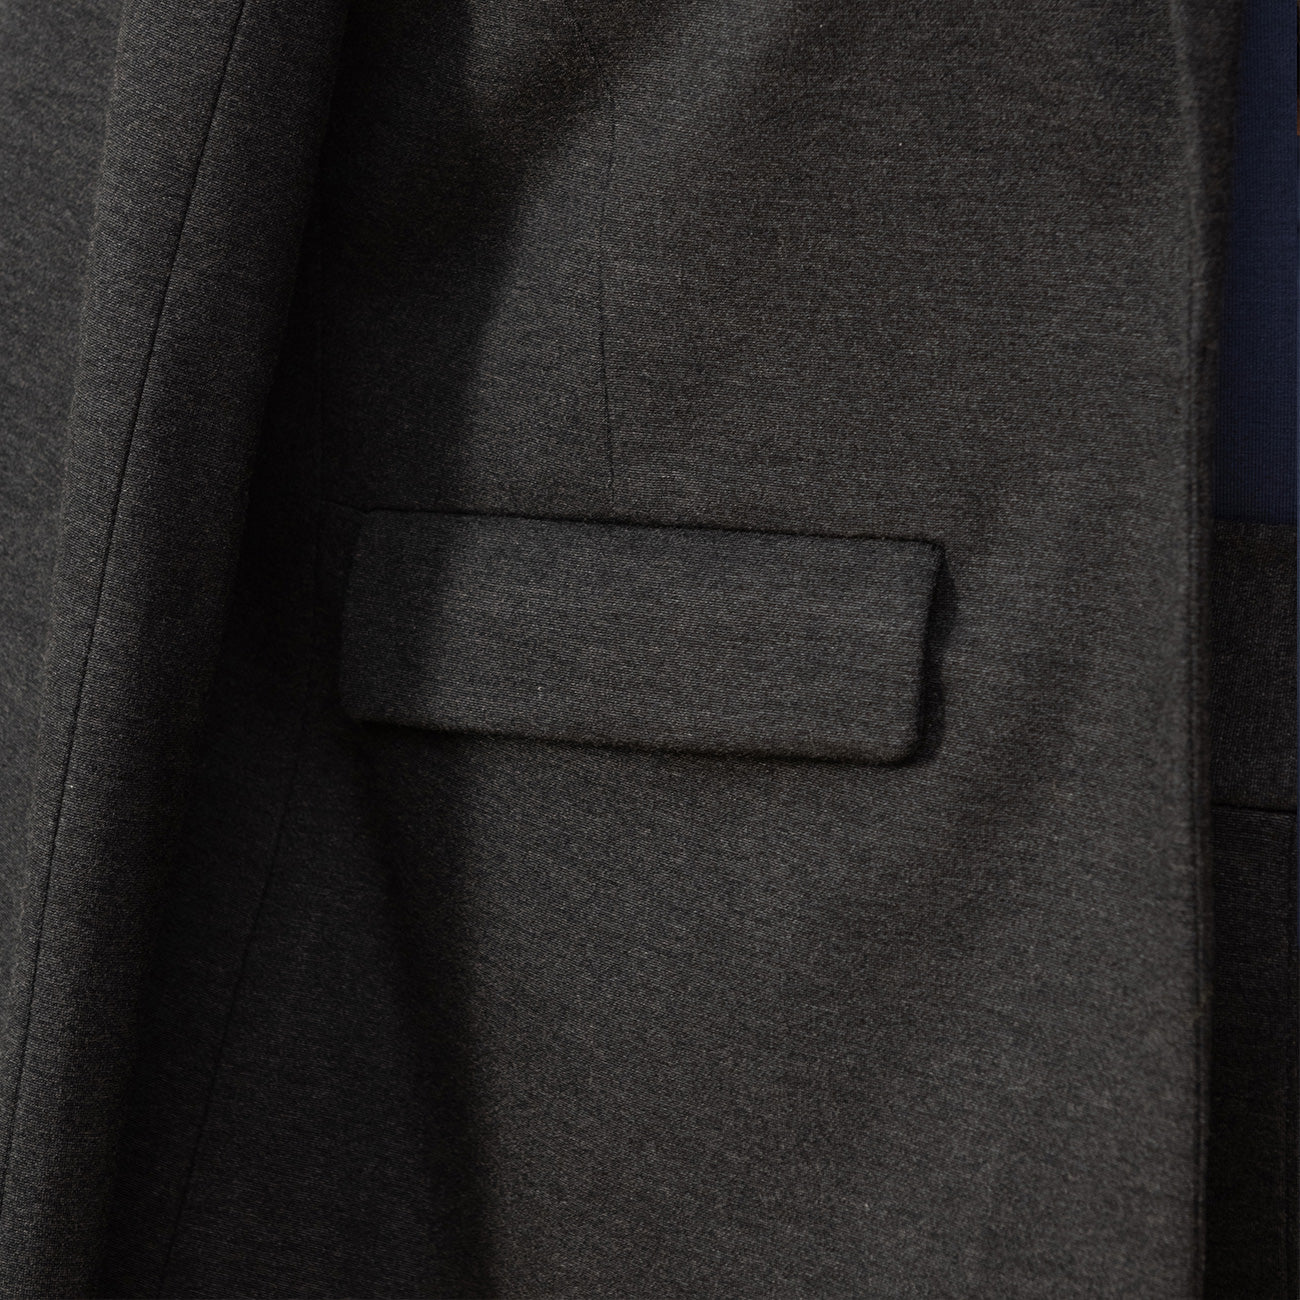 close up of pocket of a grey blazer